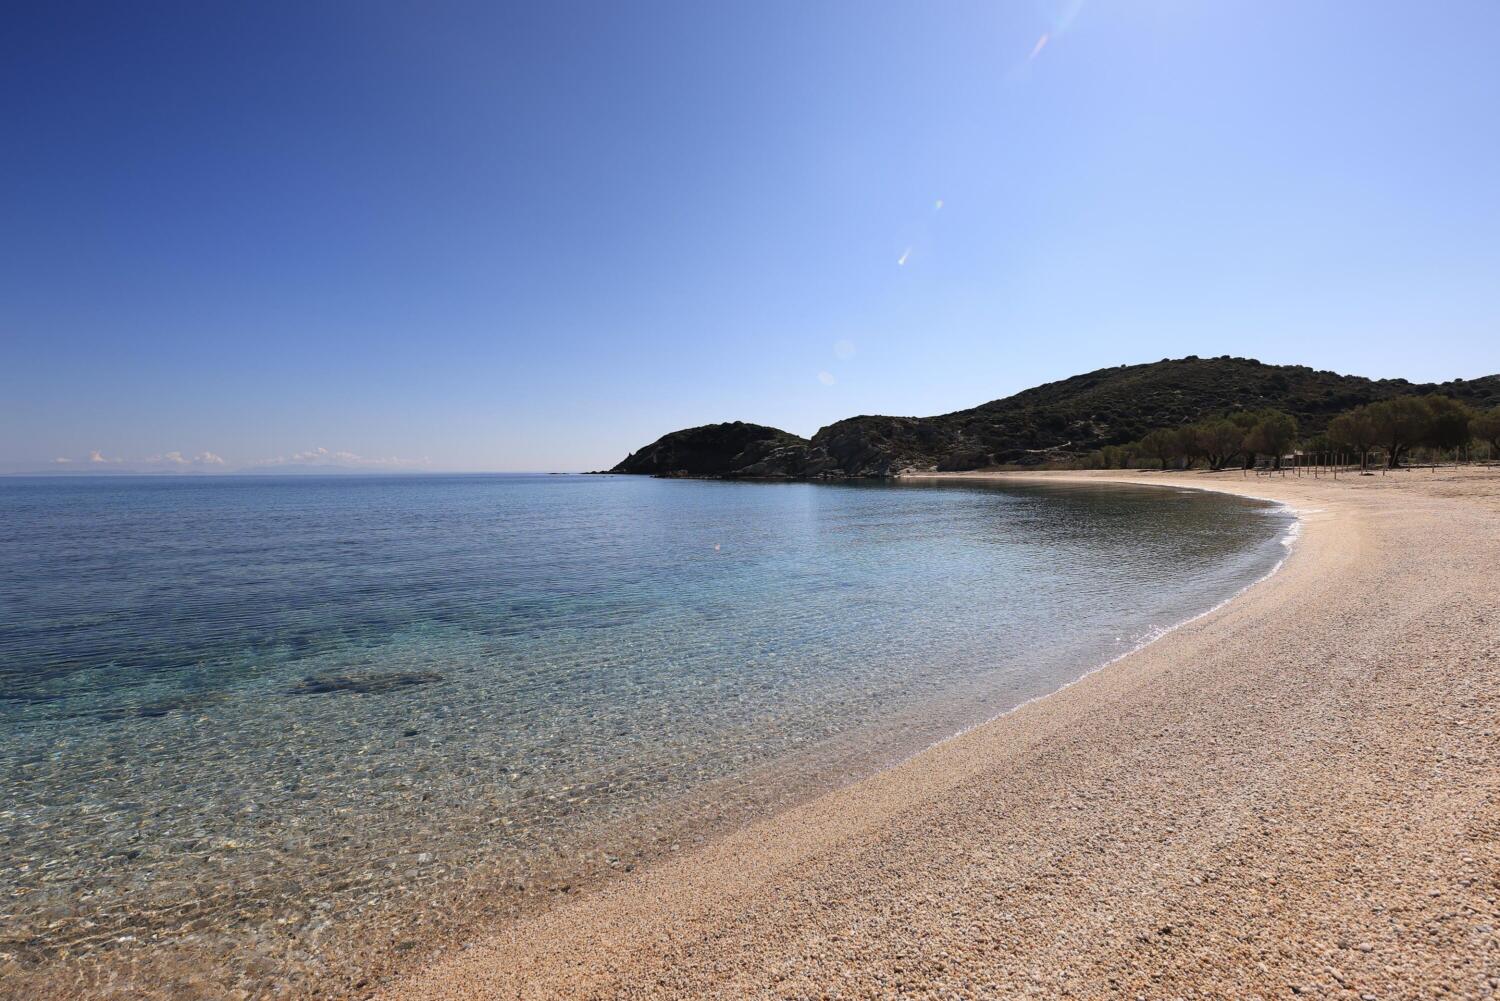 Παραλία Στόμιο Πετριών. Φωτογραφία: ©Βασίλης Συκάς, για τον Δήμο Κύμης-Αλιβερίου